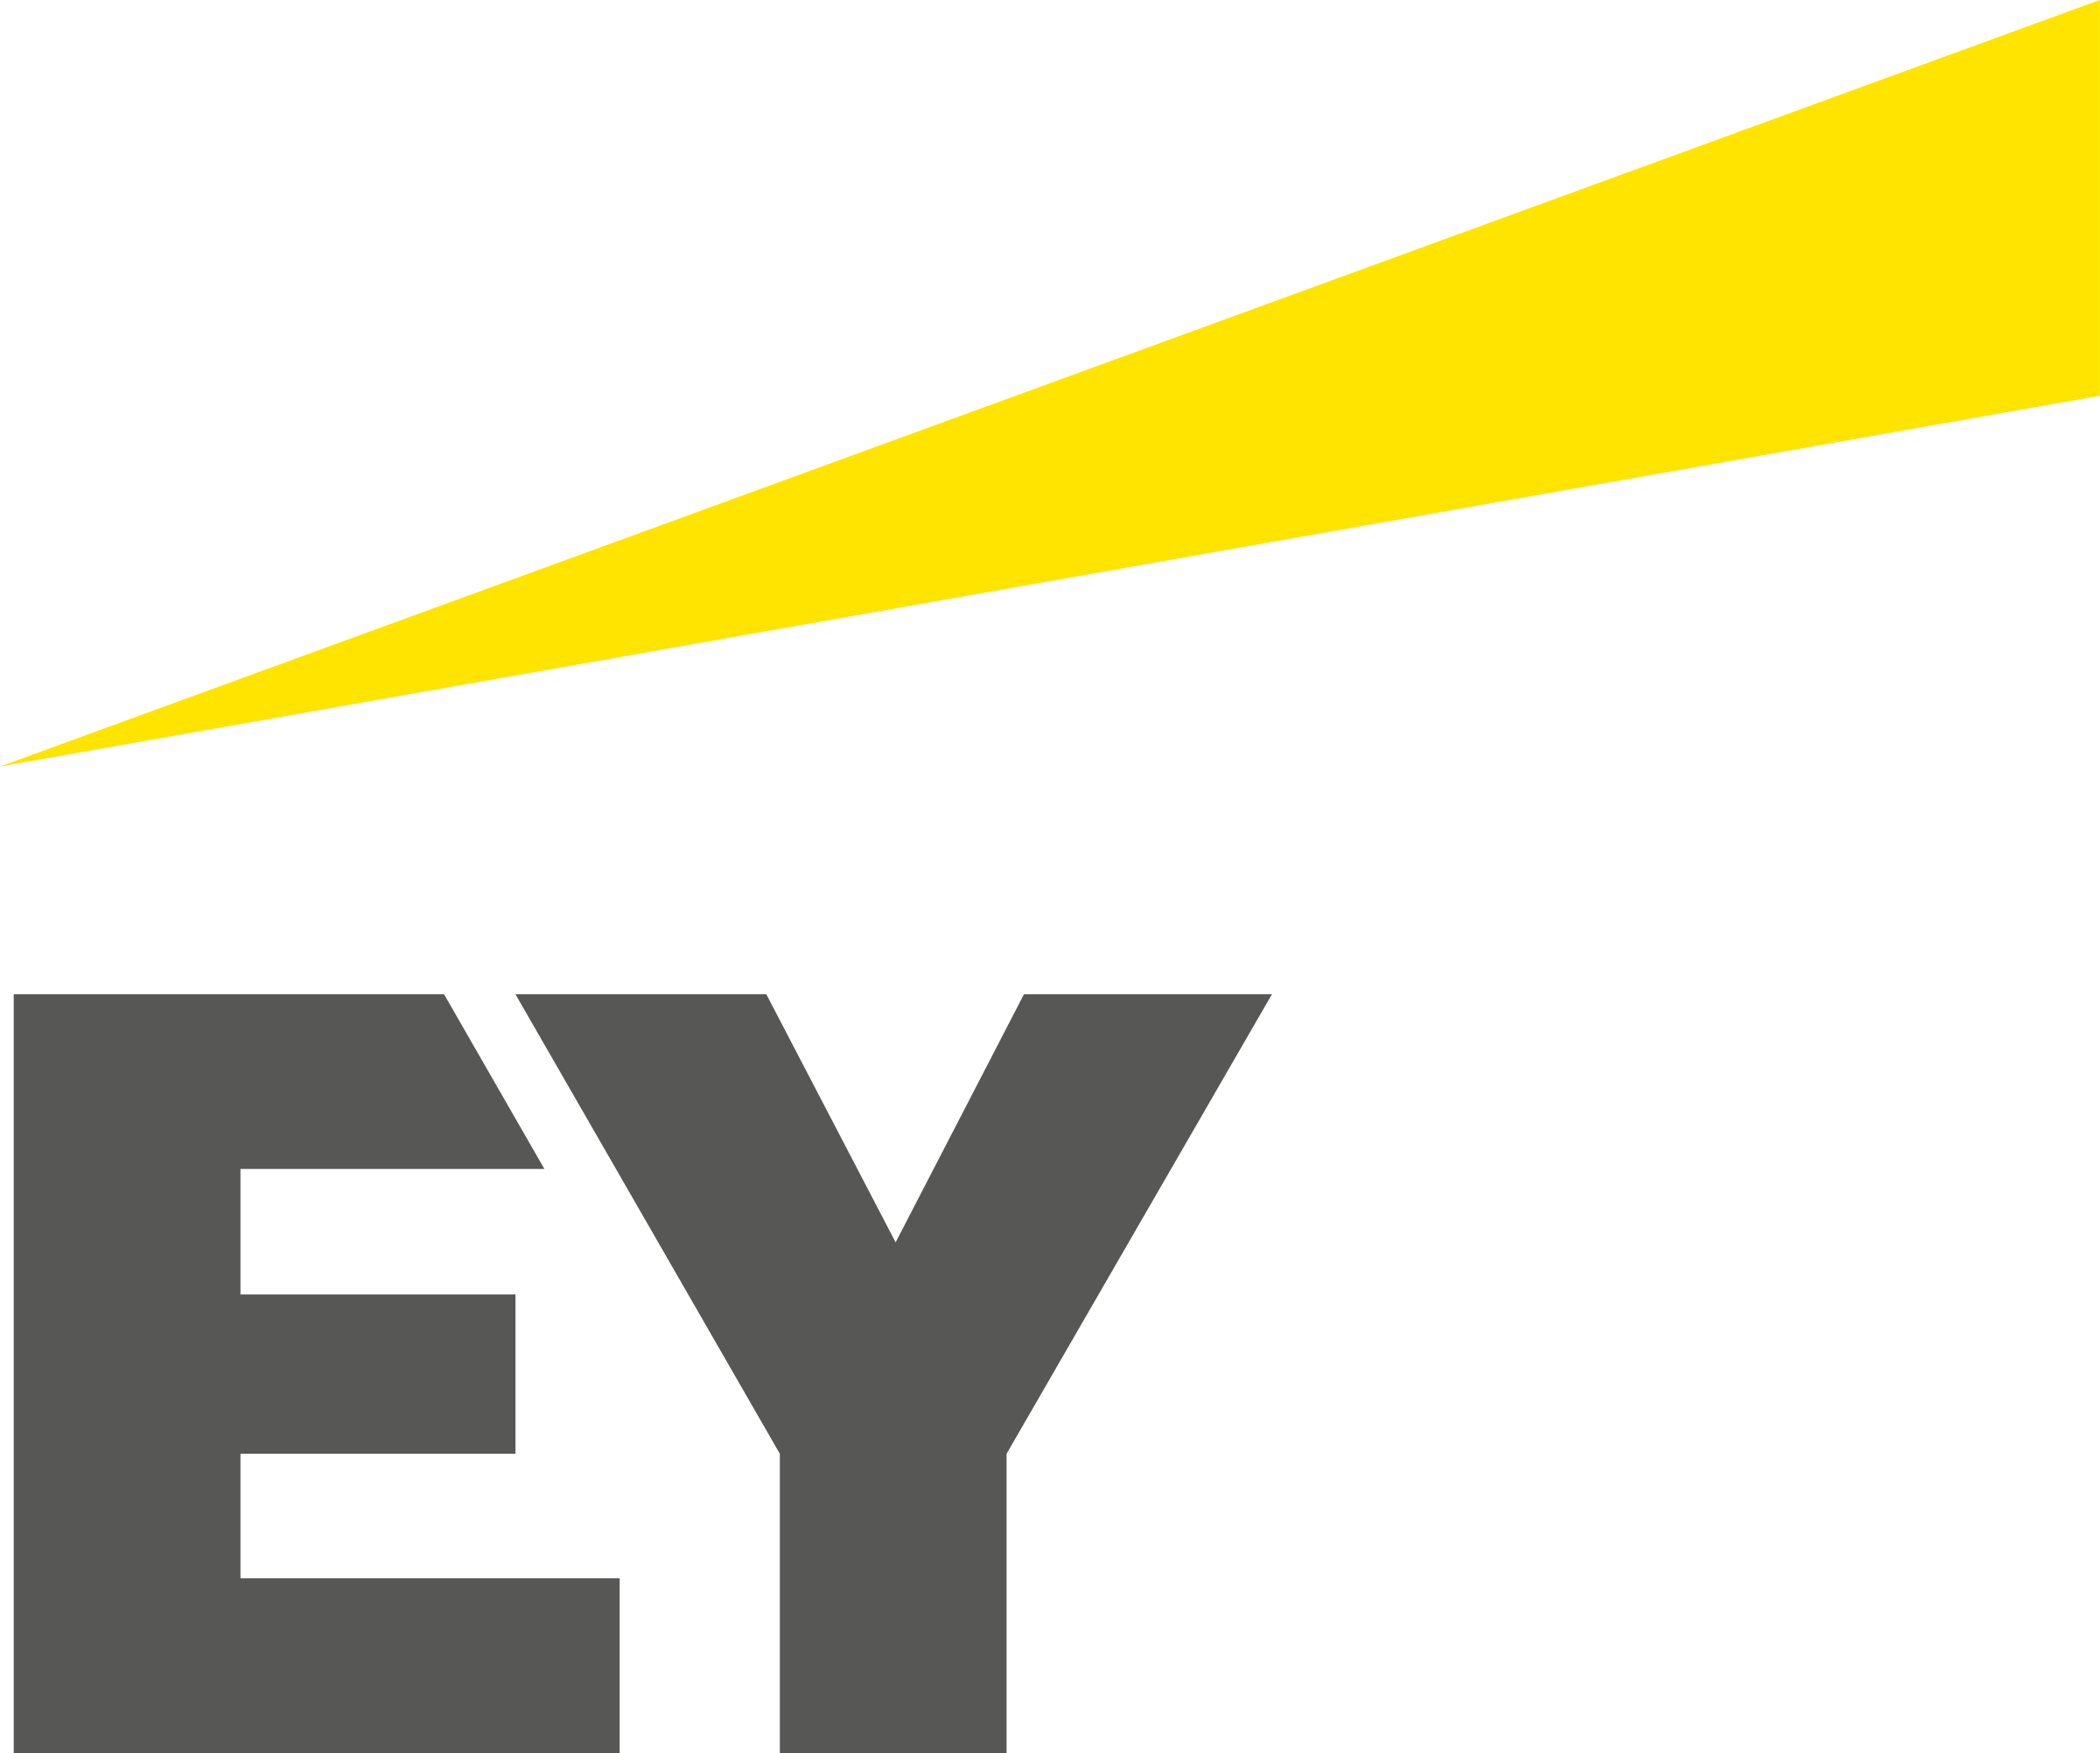 EY-logo.png